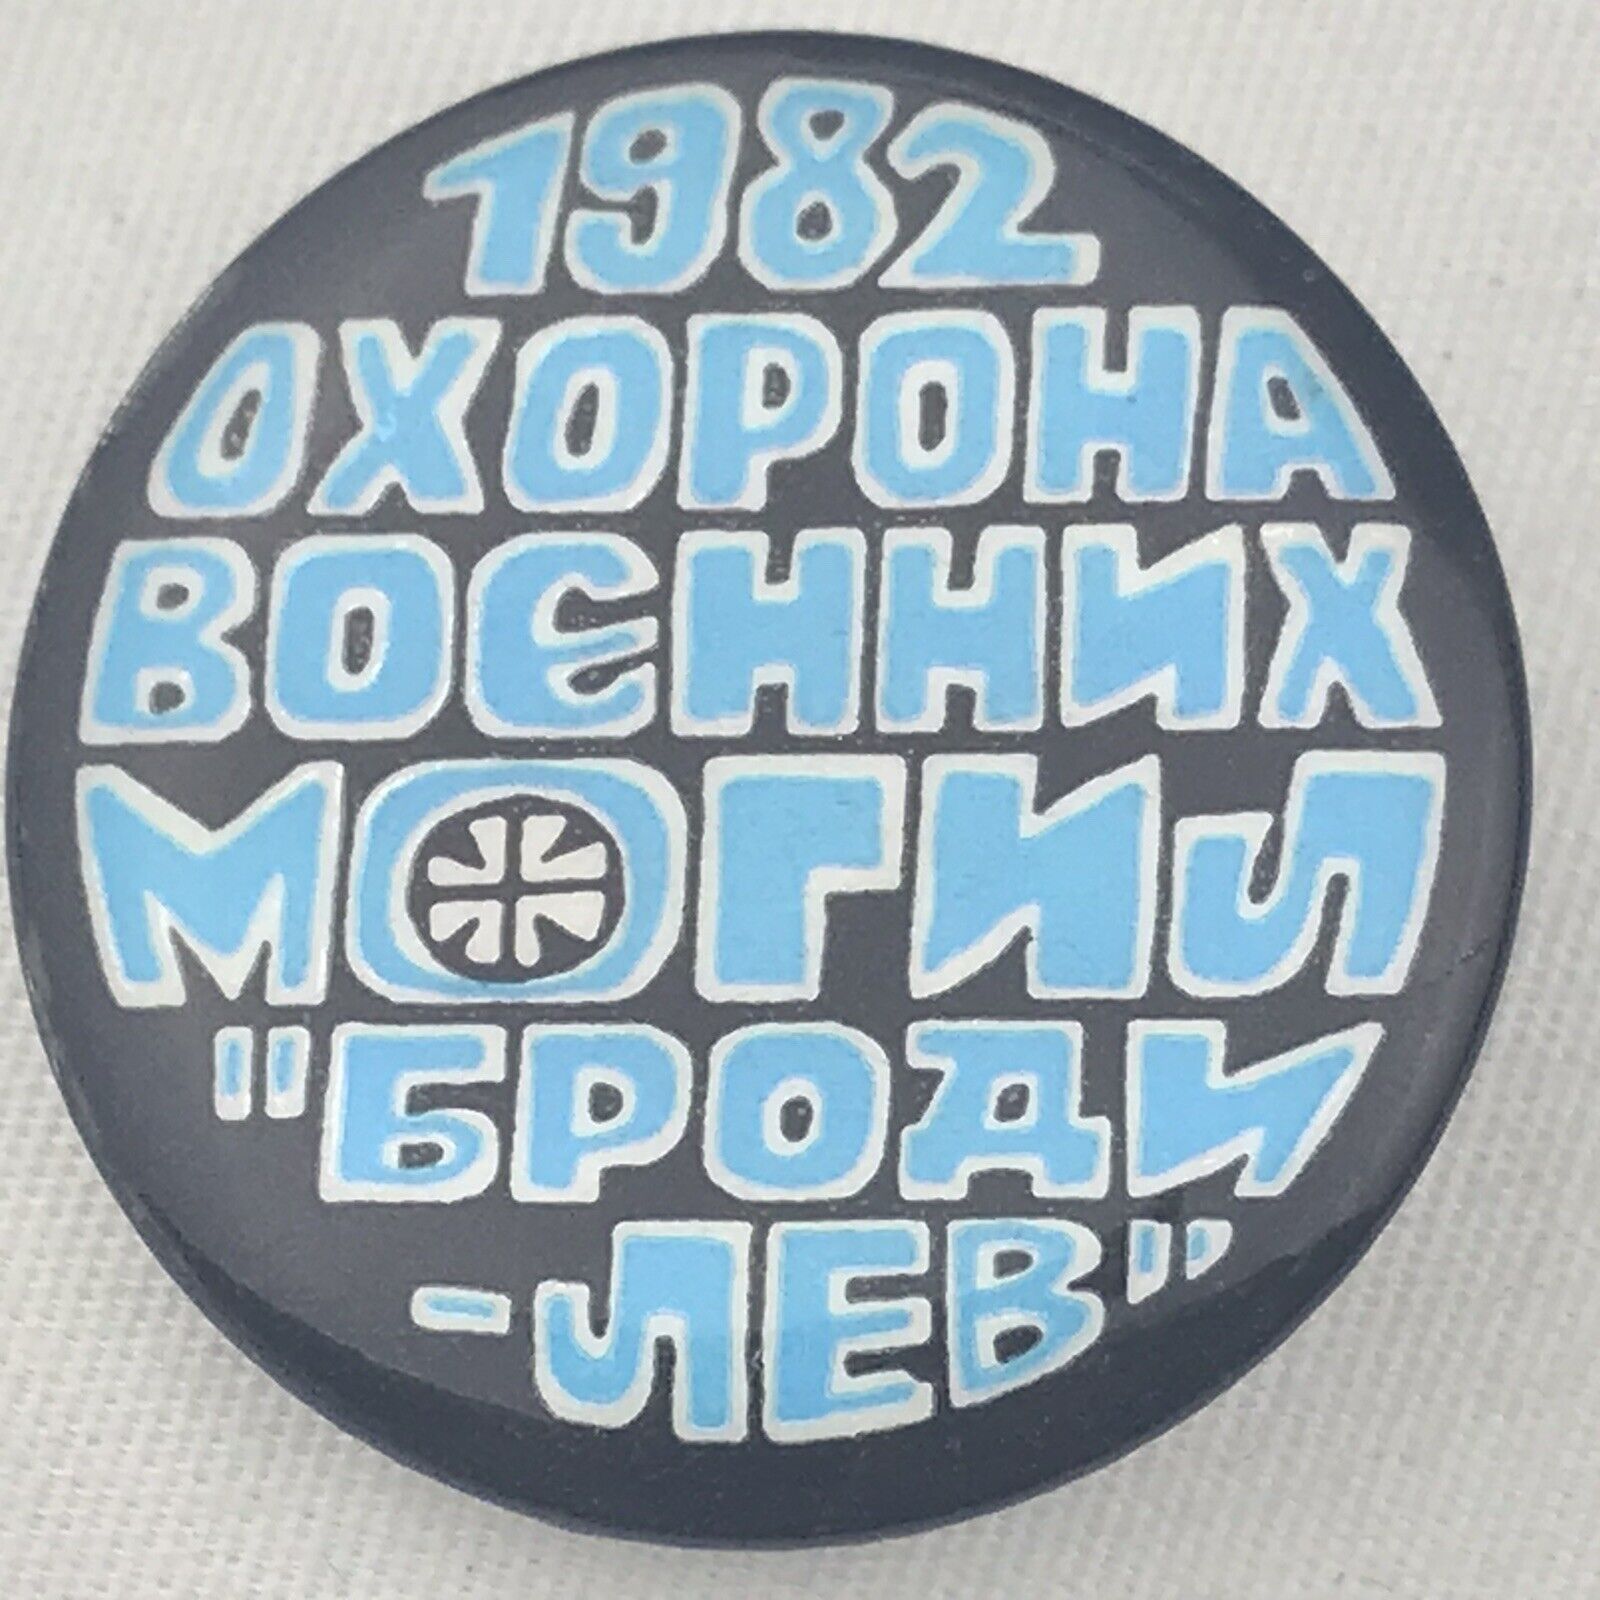 Ukrainian 1982 Button Vintage Ukraine Anti Russia Soviet Pin 80s